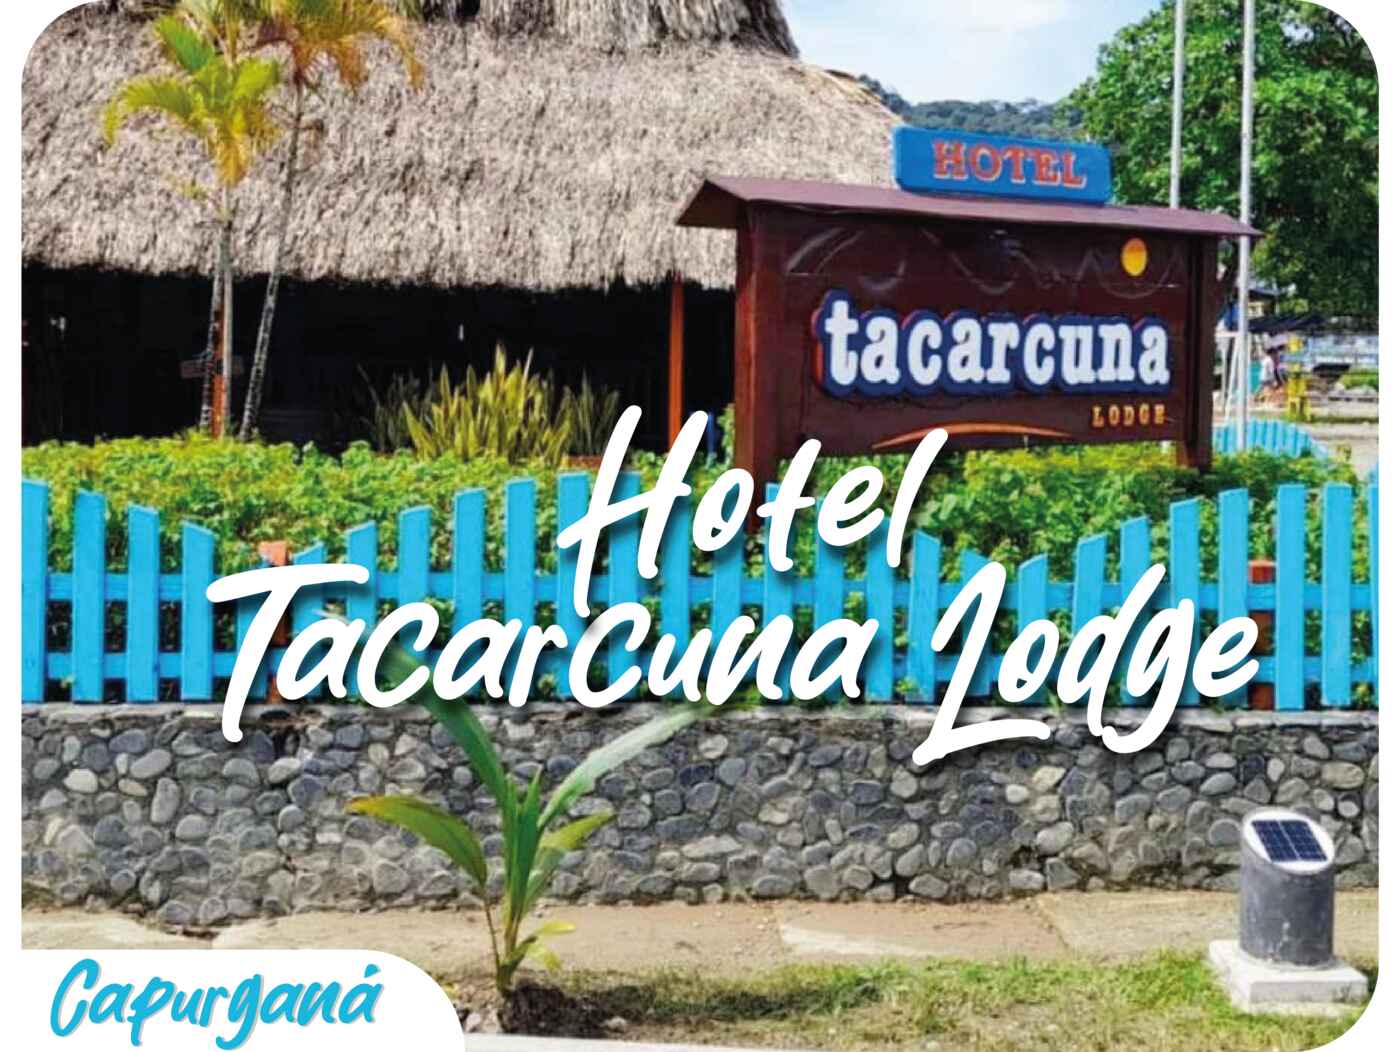 Hotel Tacarcuna Lodge